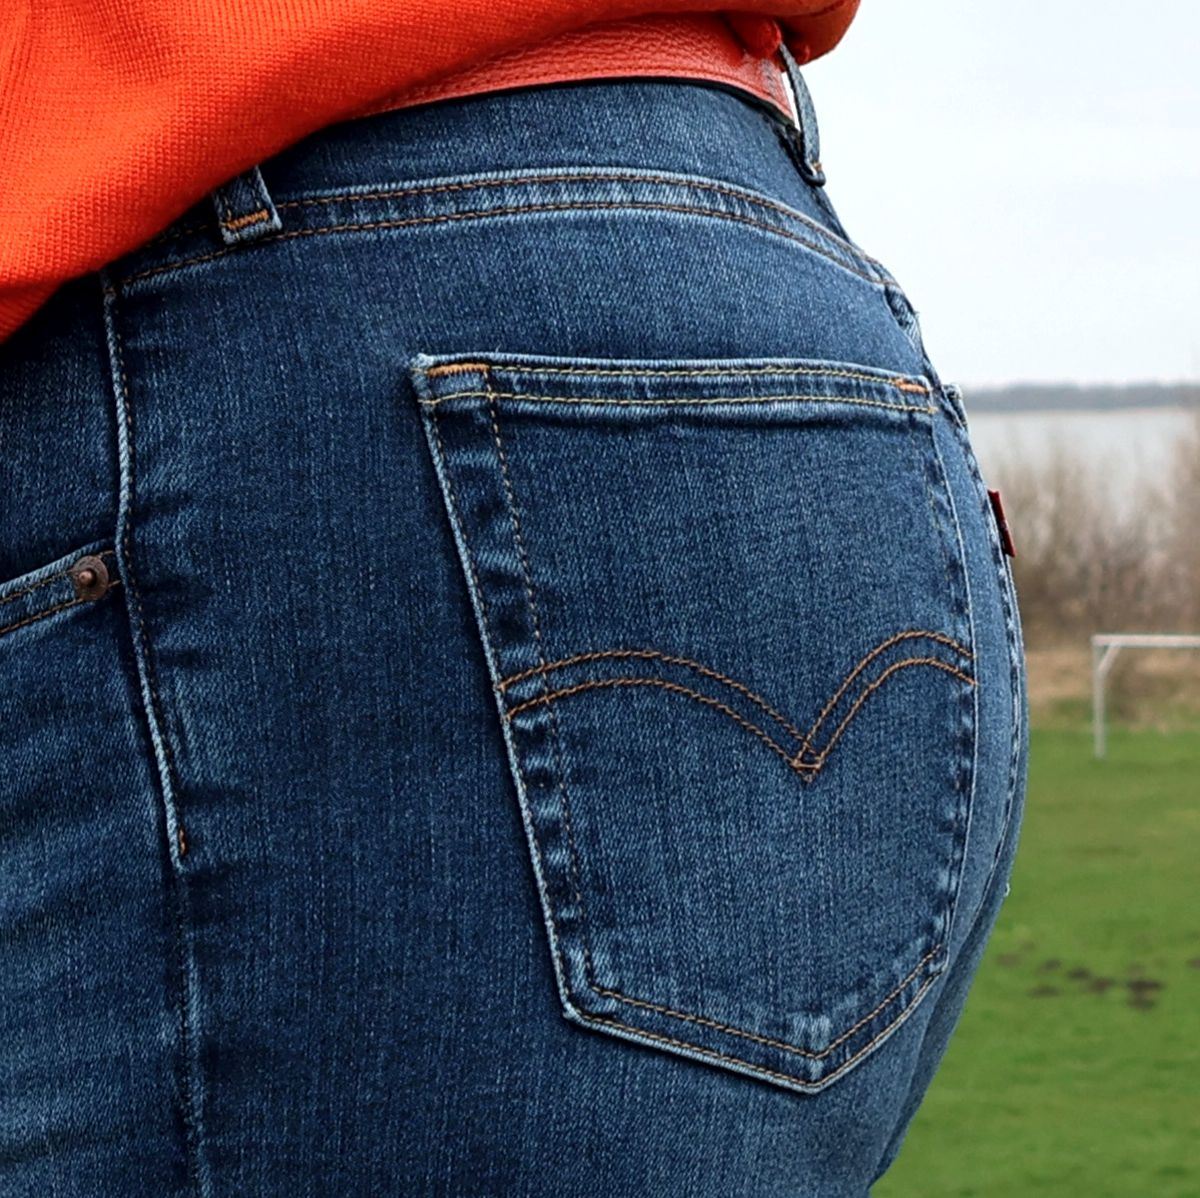 Ines Meyrose - Outfit 2023 - perfekte Jeanstaschen am Po, wenn Dein Po kleiner wirken soll: gerade angesetzt, eher tief angesetzt und nicht zu klein!